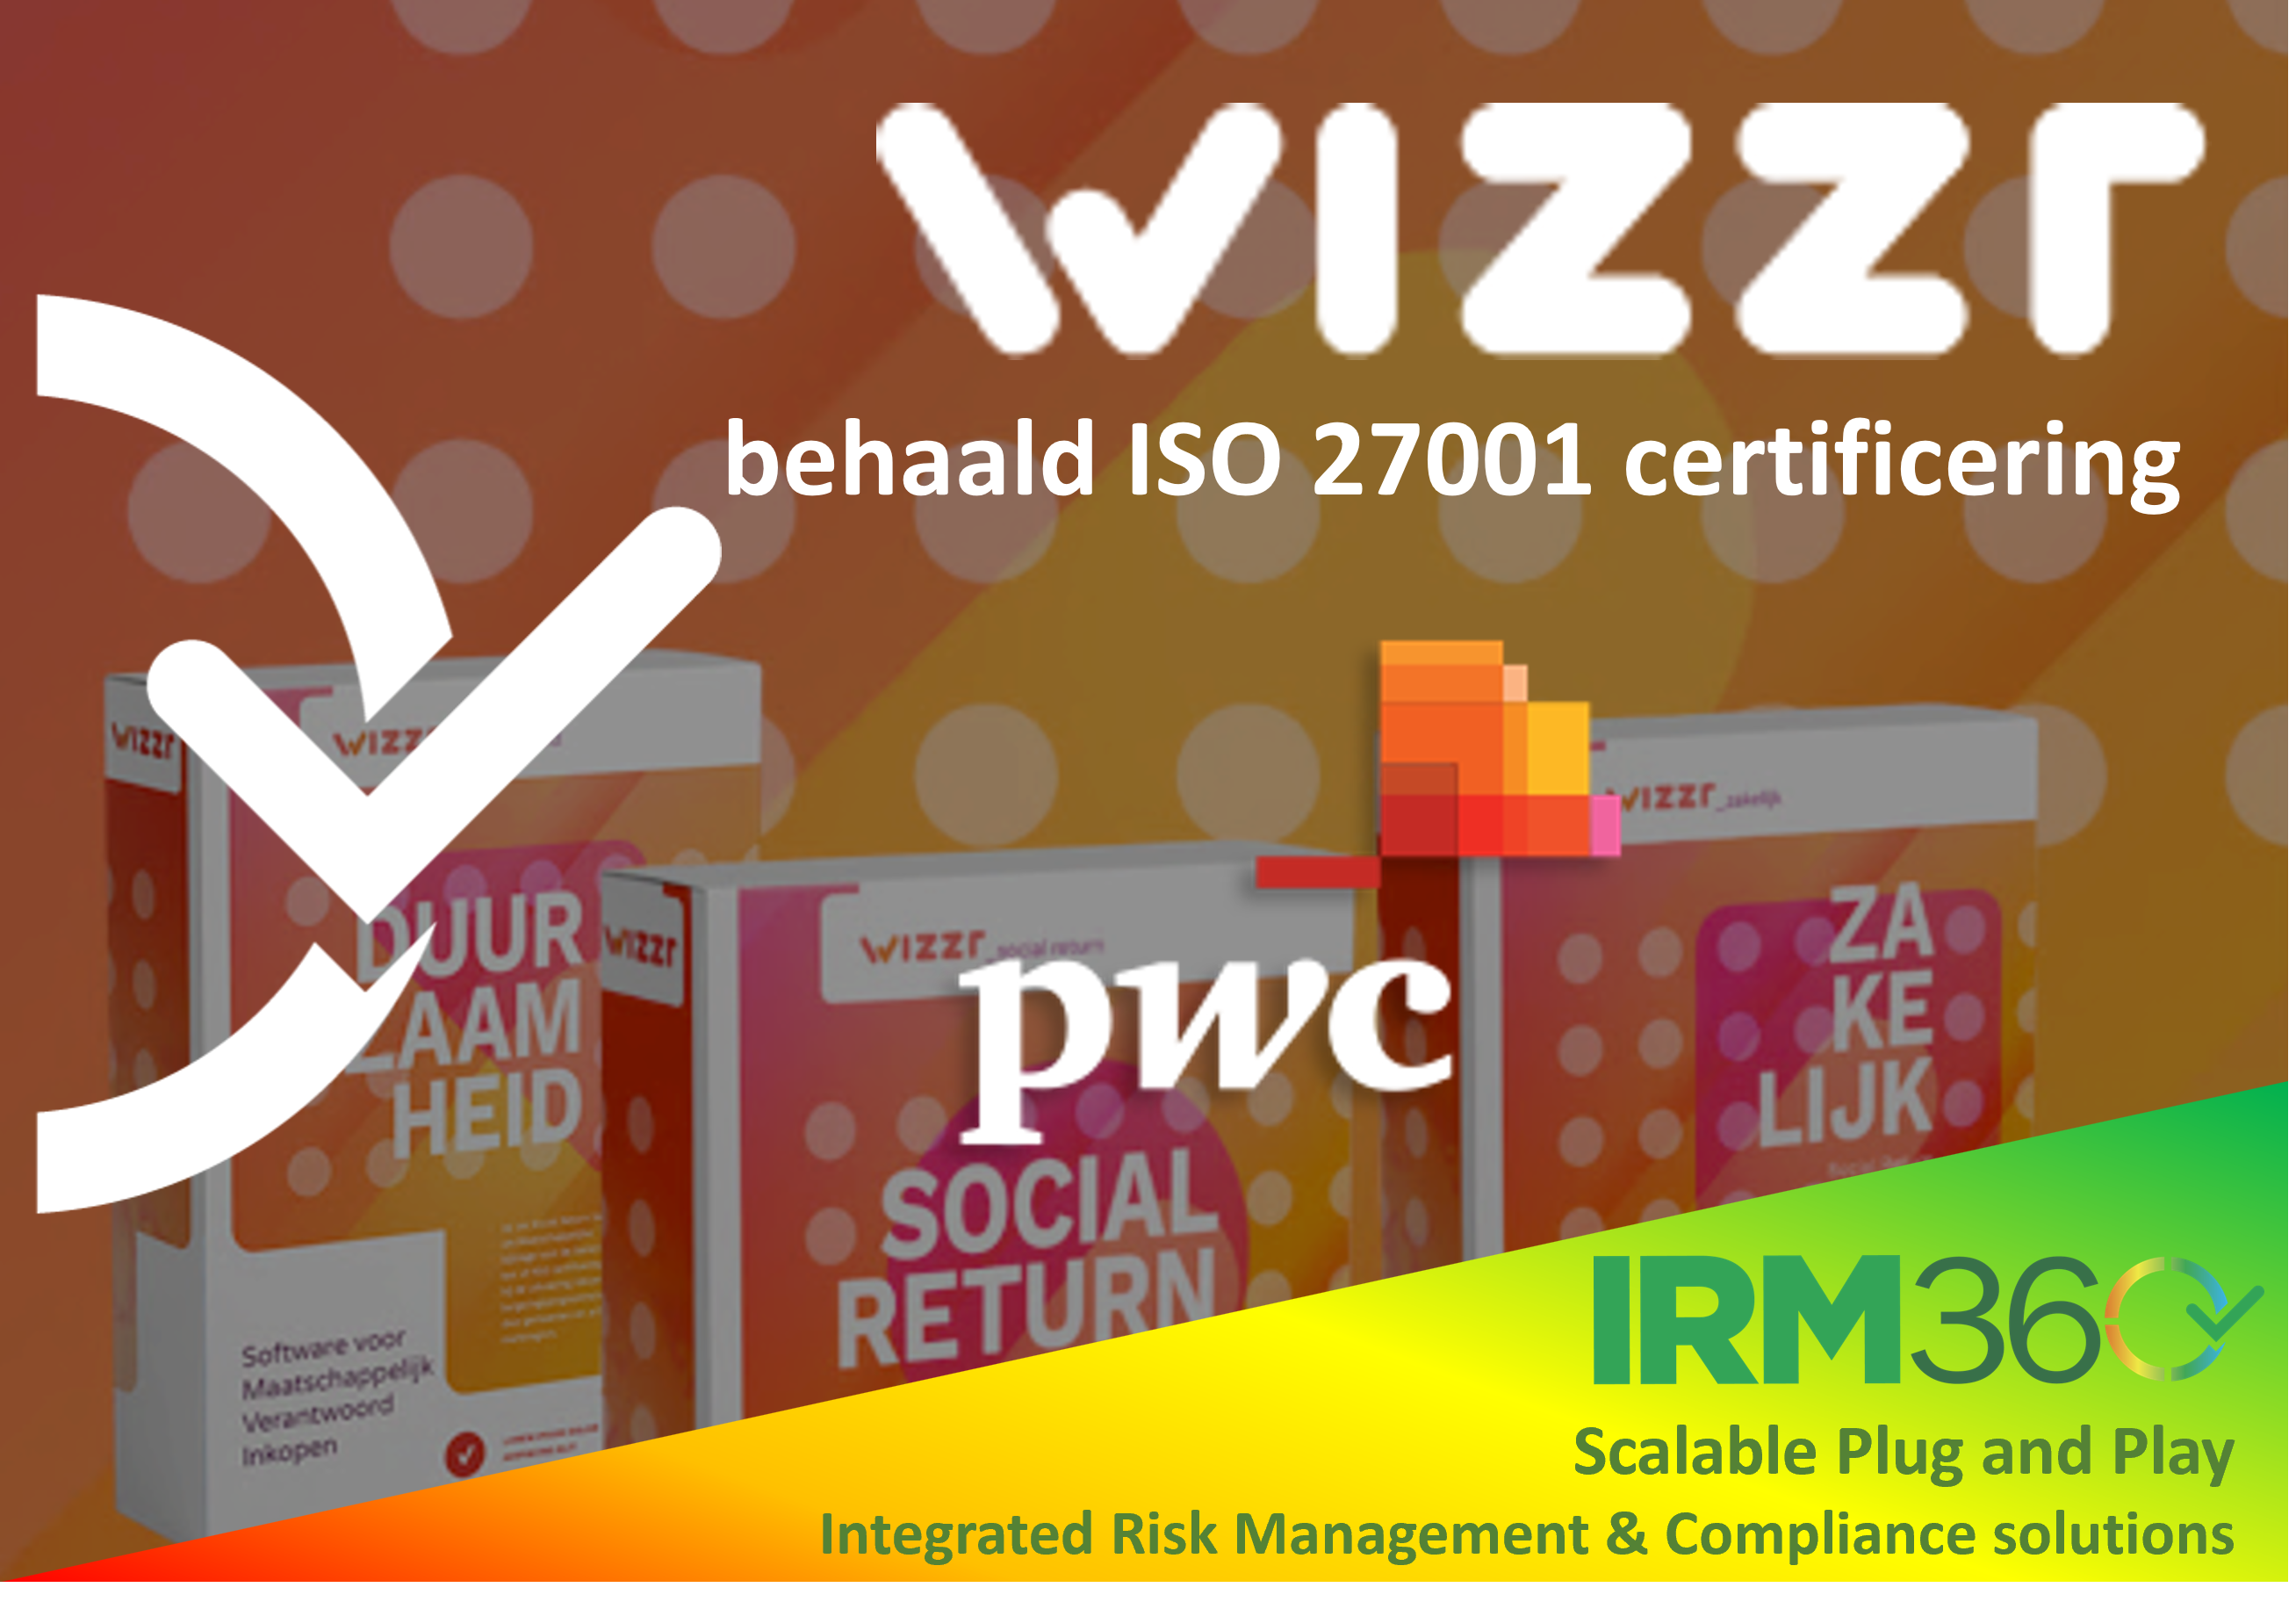 Wizzr erhält die ISO 27001 Zertifizierung!